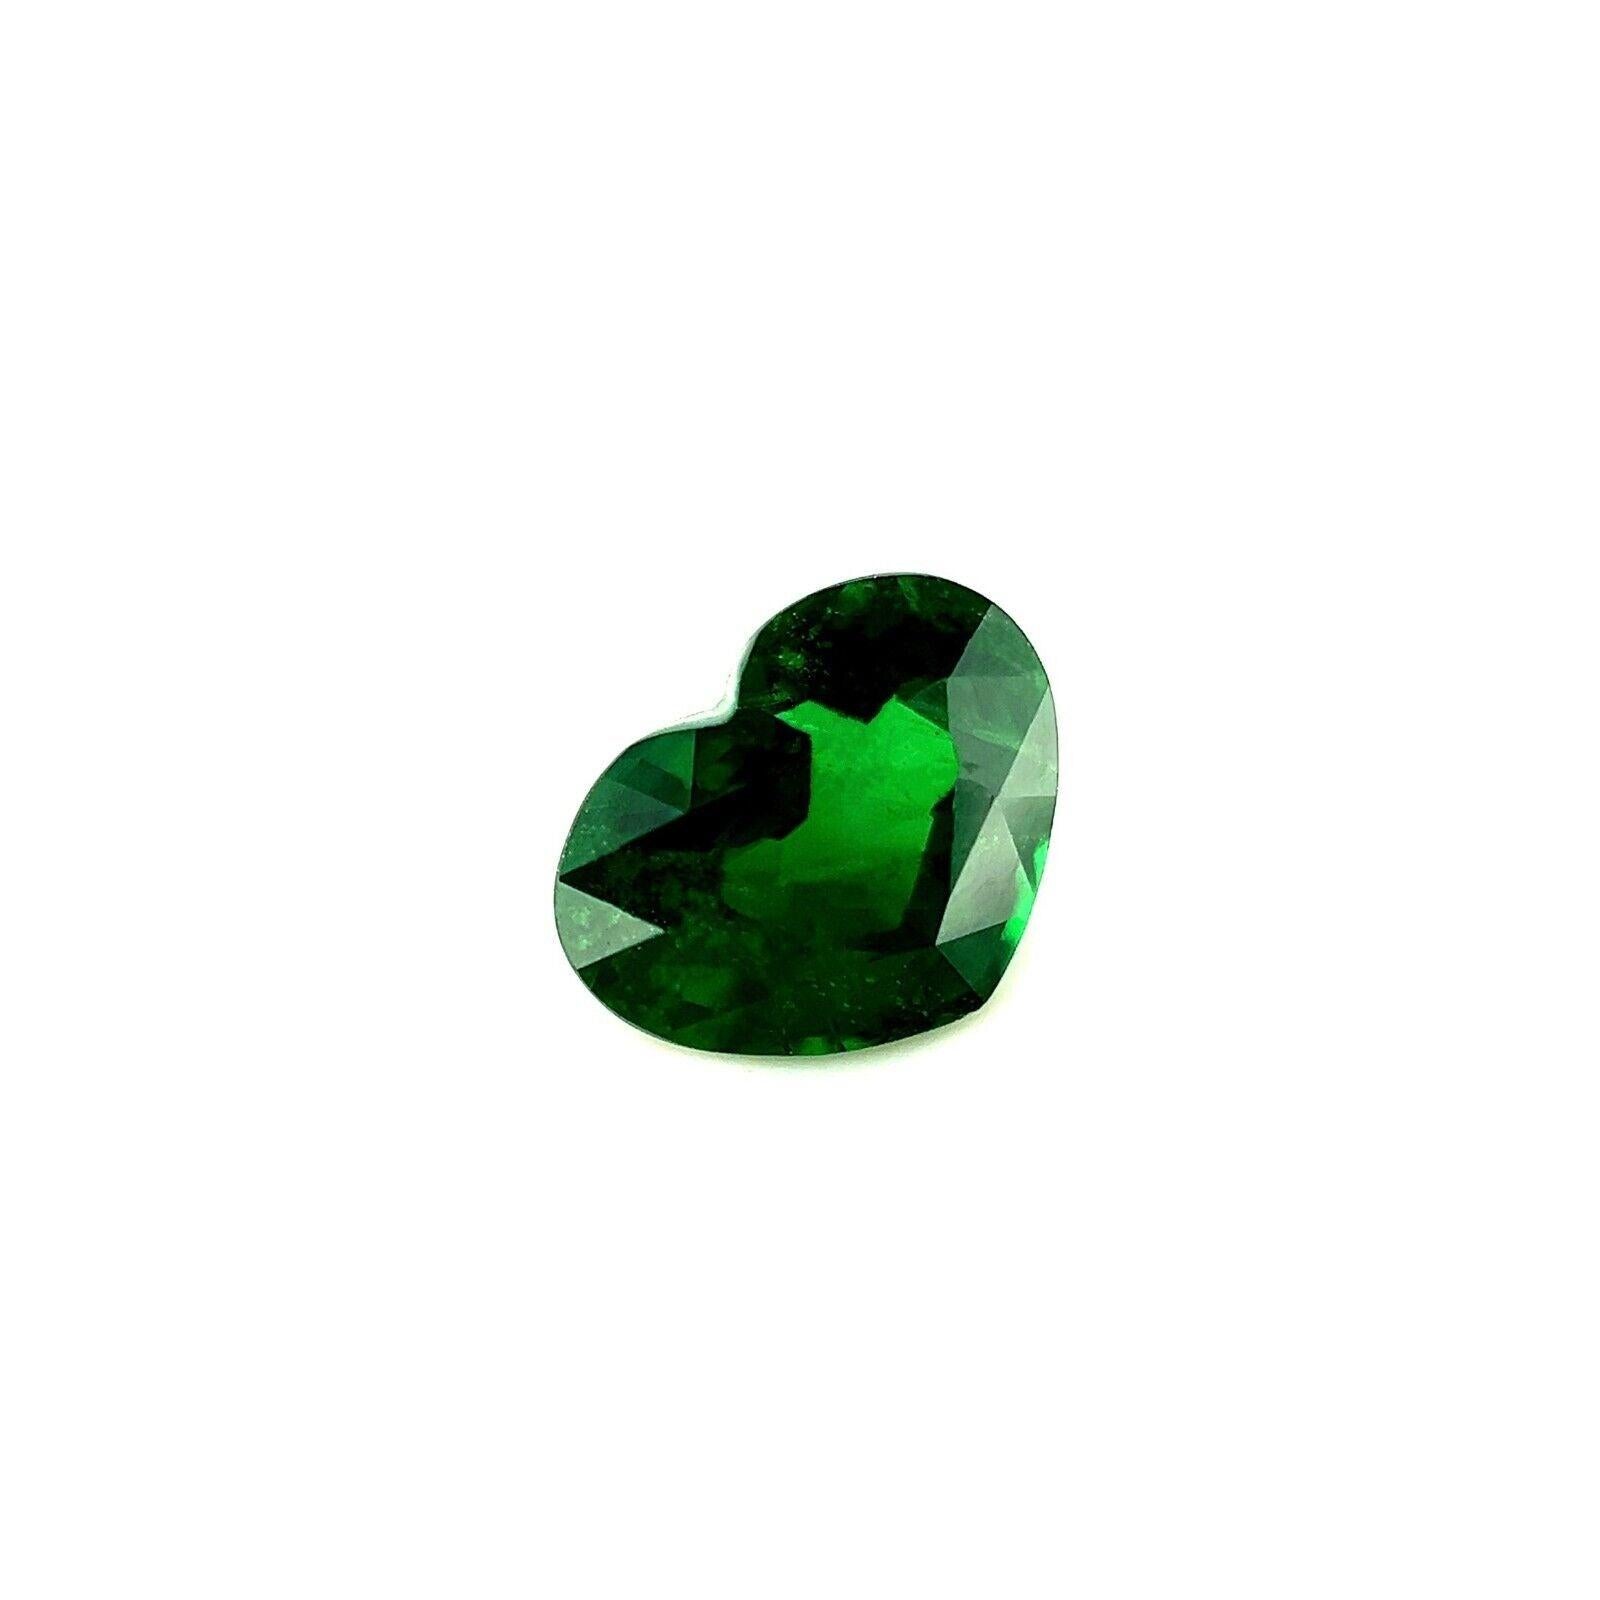 1.42ct Tsavorit Granat Feine Farbe Lebendiges Grün Herz Schliff Seltener Edelstein 7.8x6mm

Feiner lebhaft grüner Tsavorit Granat Edelstein.
1,42ct Karat Stein mit einer schönen lebhaften grünen Farbe und sehr guter Reinheit. Einige kleine